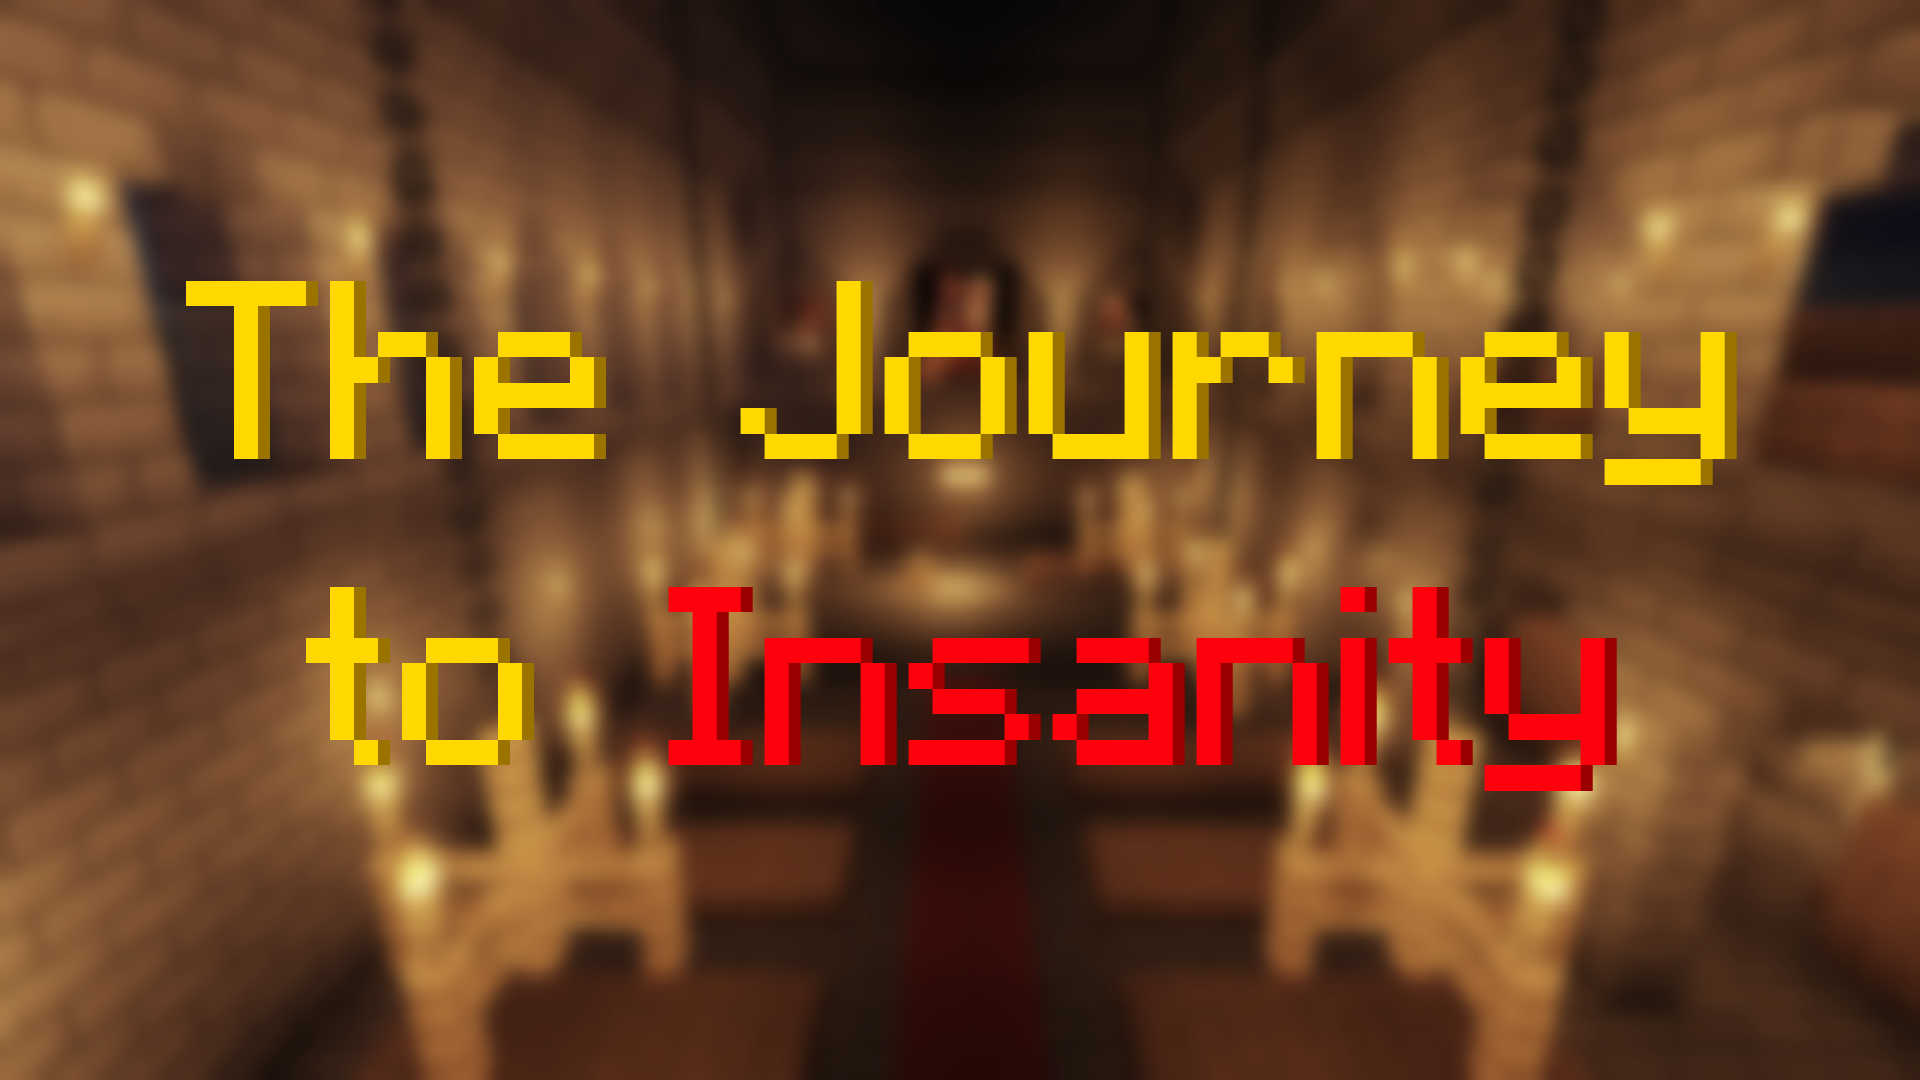 Herunterladen The Journey to Insanity zum Minecraft 1.16.5